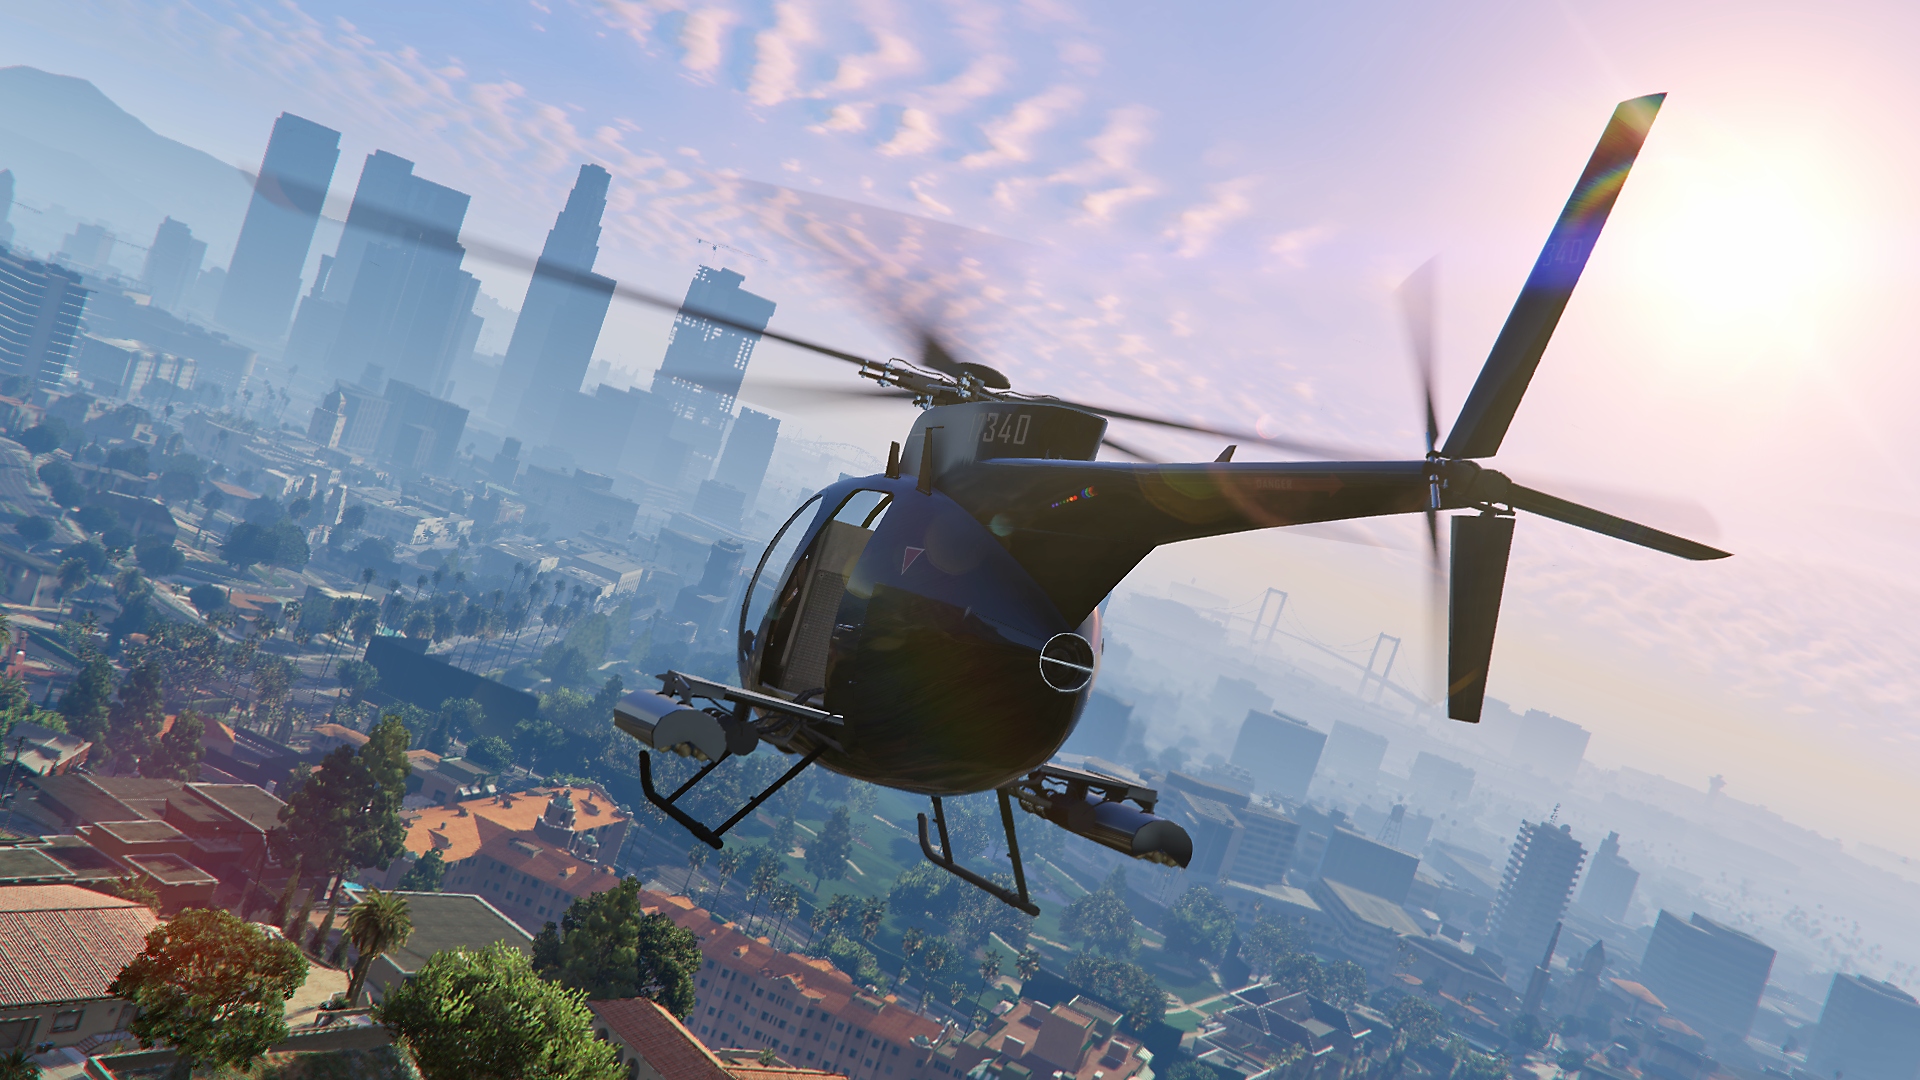 Grand Theft Auto V – skjermbilde som viser et helikopter i luften med byhorisonten i det fjerne.